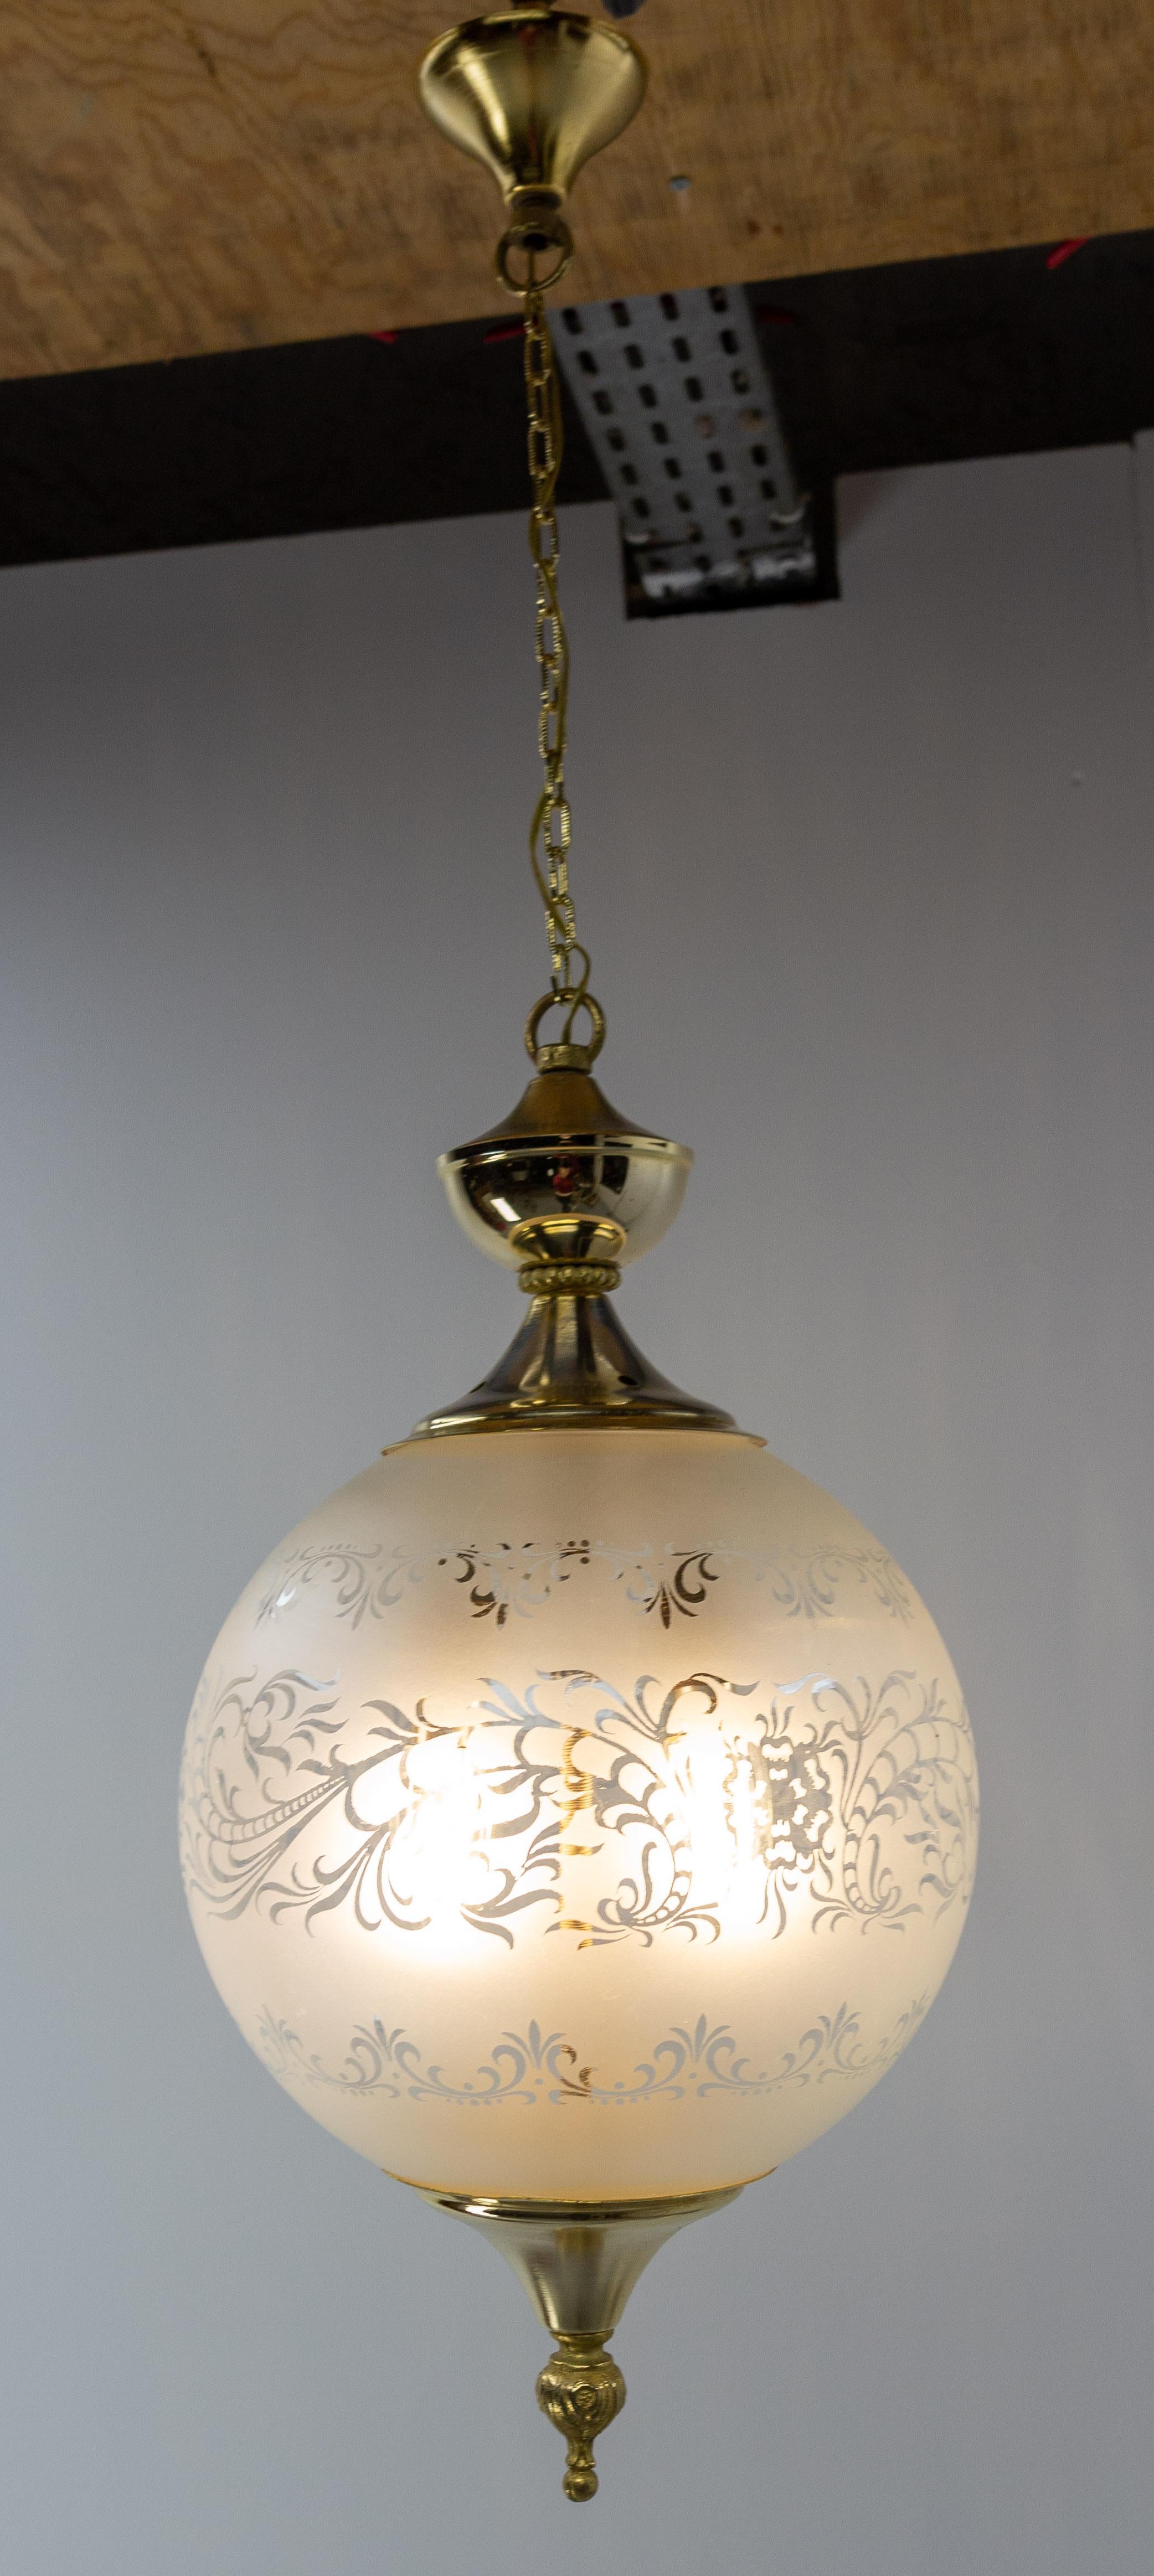 Hängeleuchte Kronleuchter, Frankreich, Mitte des Jahrhunderts.
Zwei Glühbirnen im Inneren der Lampe.
Die Glaskugel ist mit pflanzlichen Motiven verziert, die abwechselnd aus mattiertem und glattem Glas bestehen.
Messing und Glas, hergestellt in